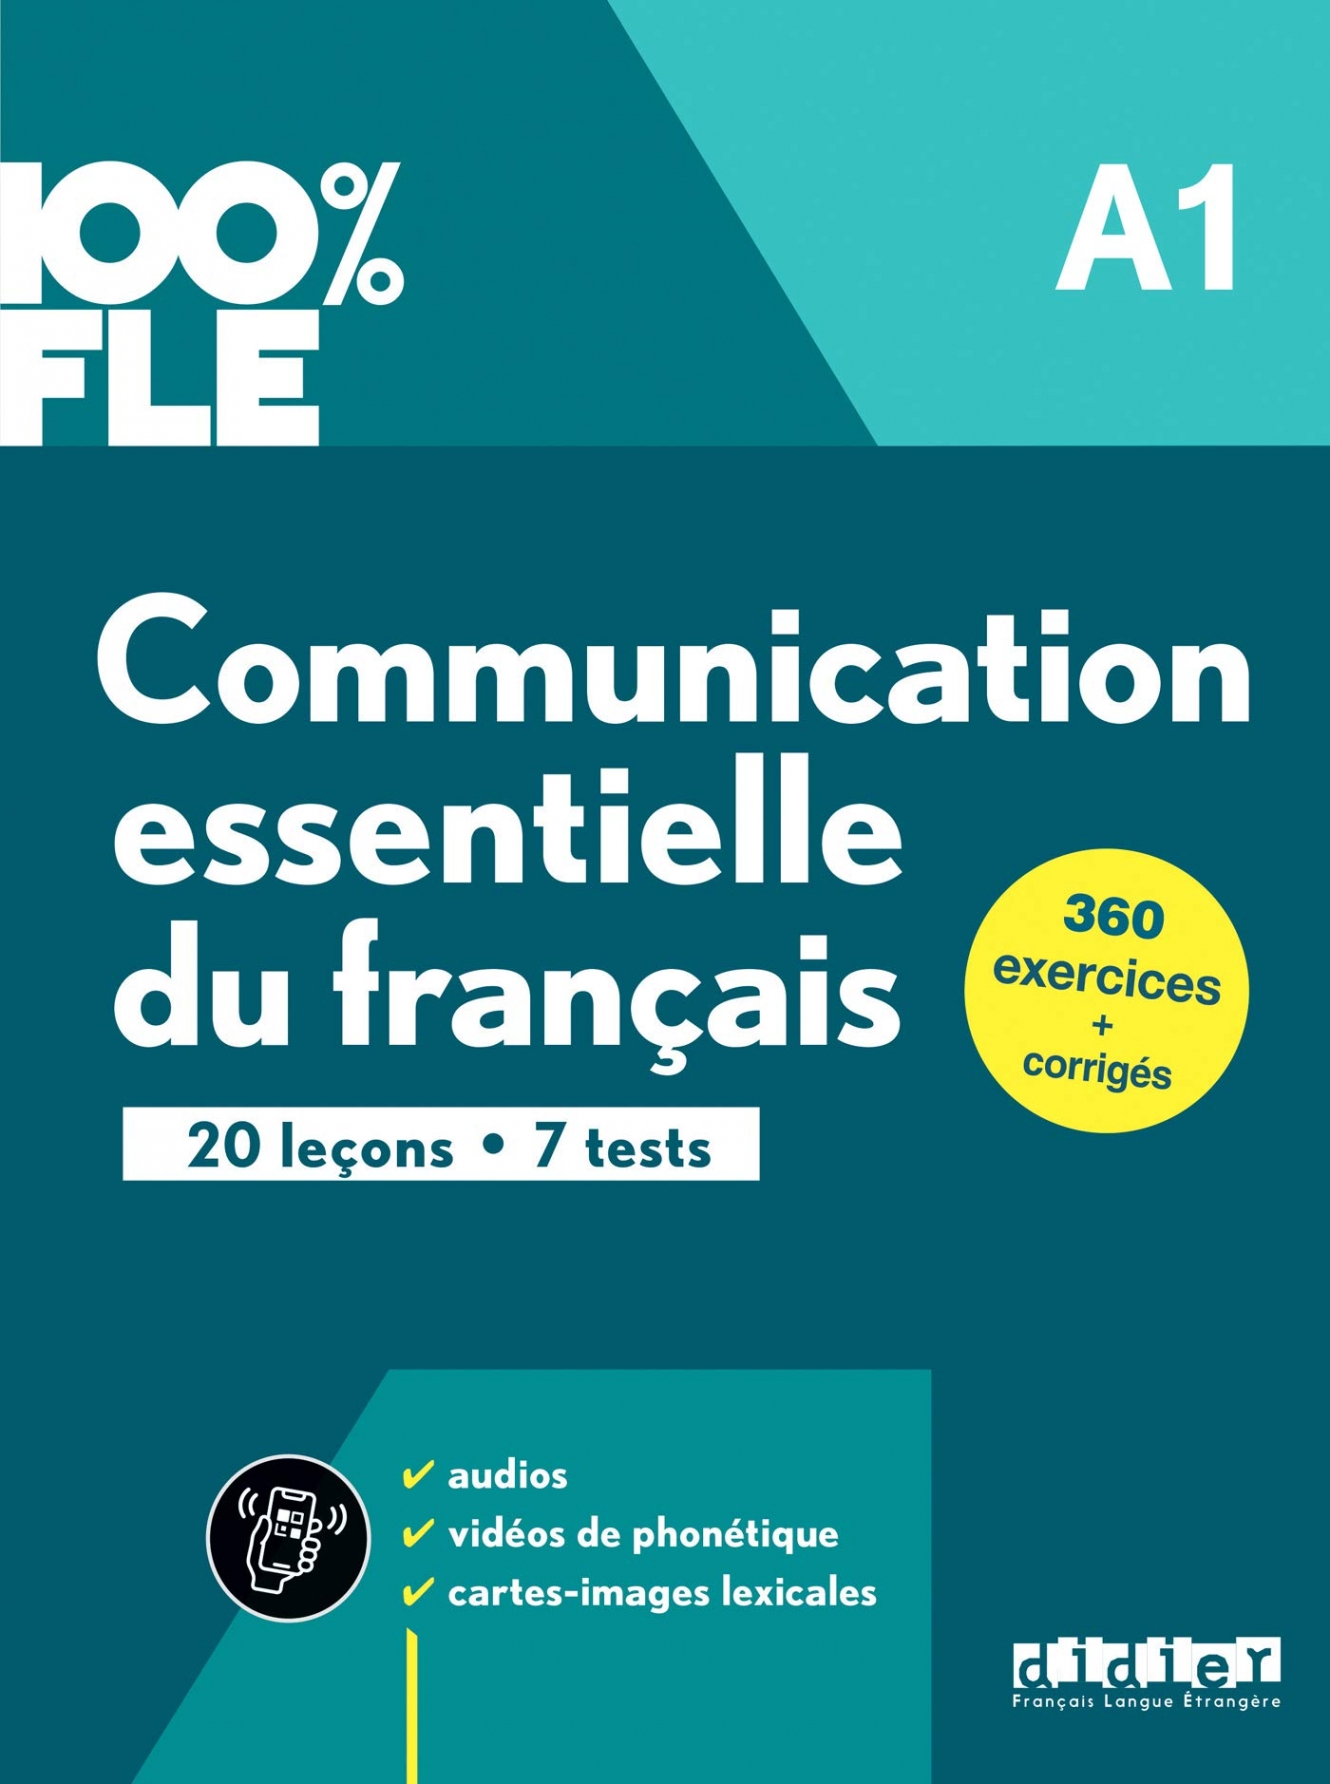 Lions-Olivieri, M-L. et al. Communication essentielle du franais A1 - Livre + Onprint 